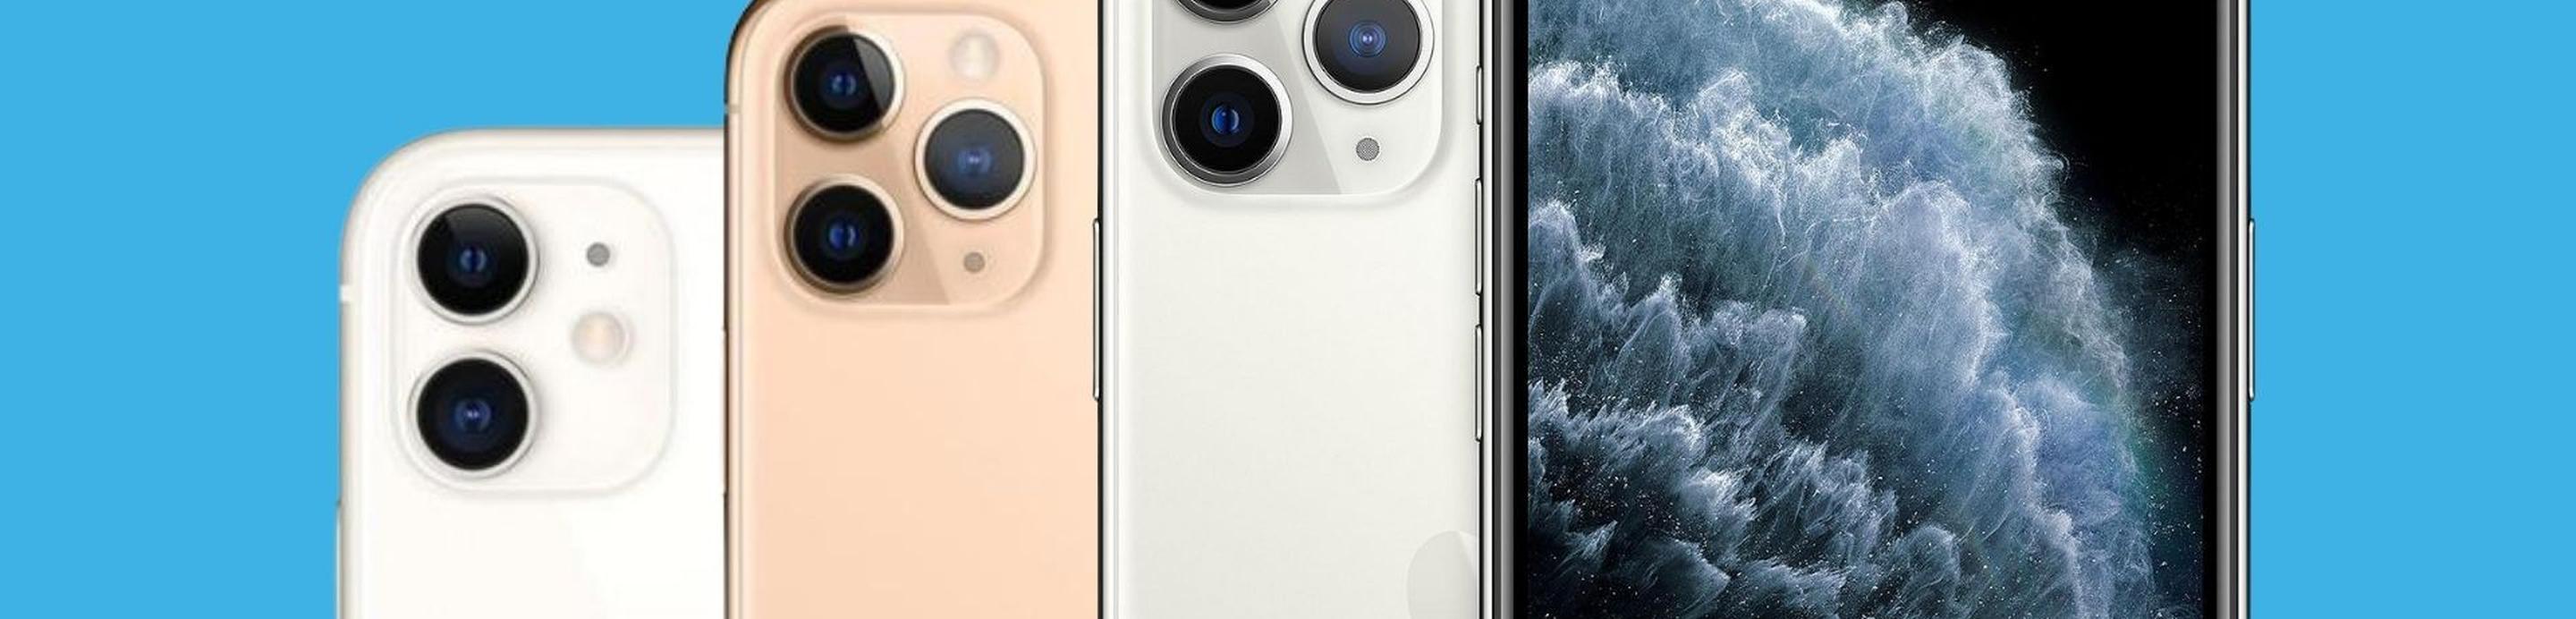 iPhone 11 e iPhone 11 Pro a confronto: quale dei due è meglio scegliere?